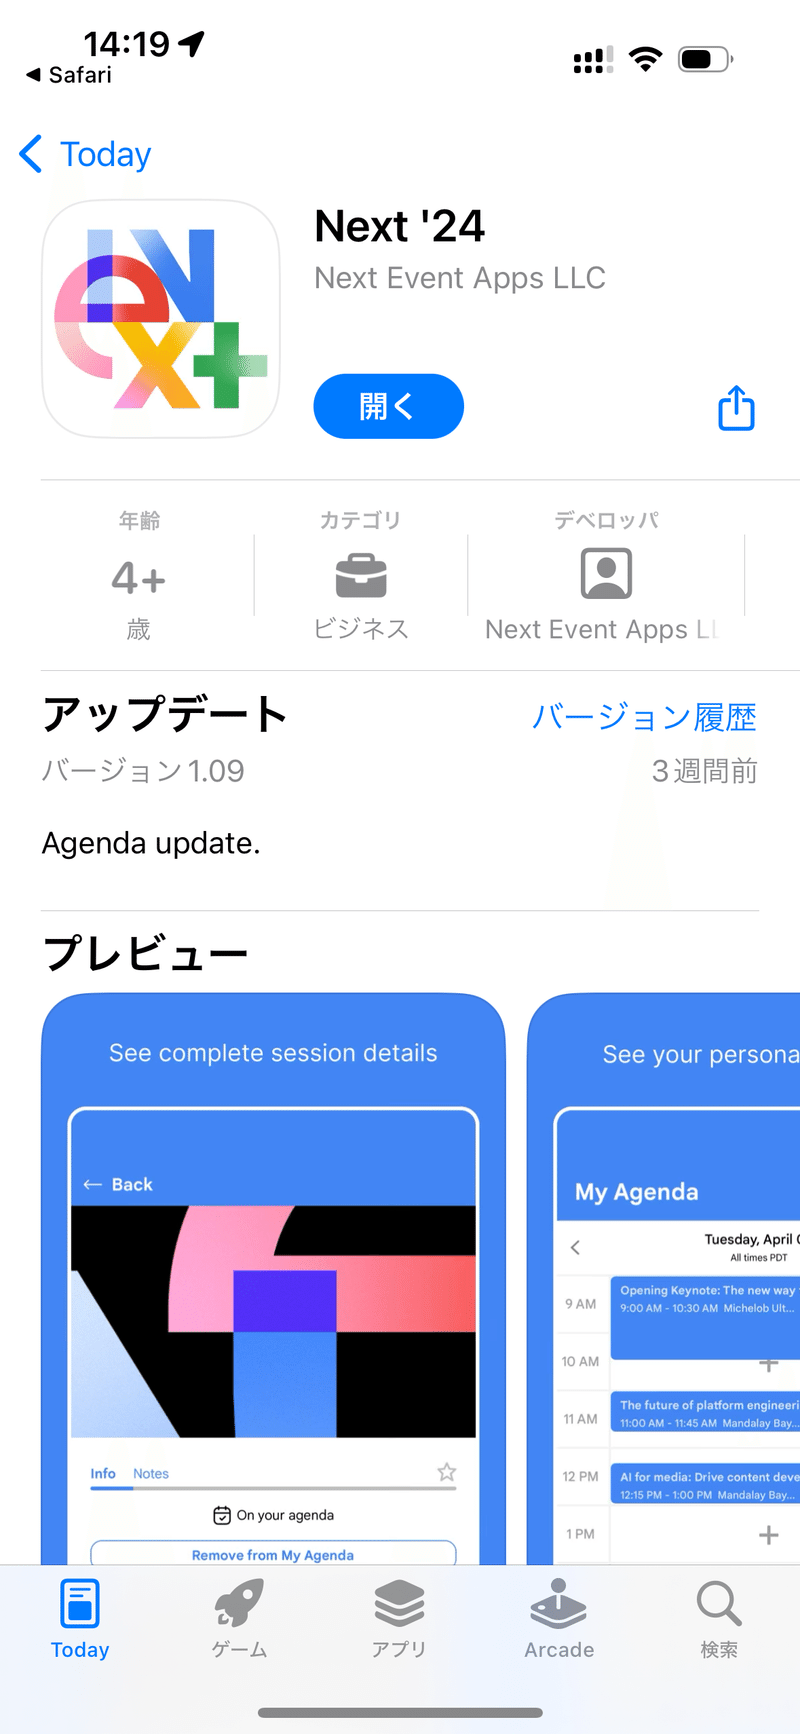 iOSのAppStoreのスクリーンショットです。Next '24というアプリが表示されています。